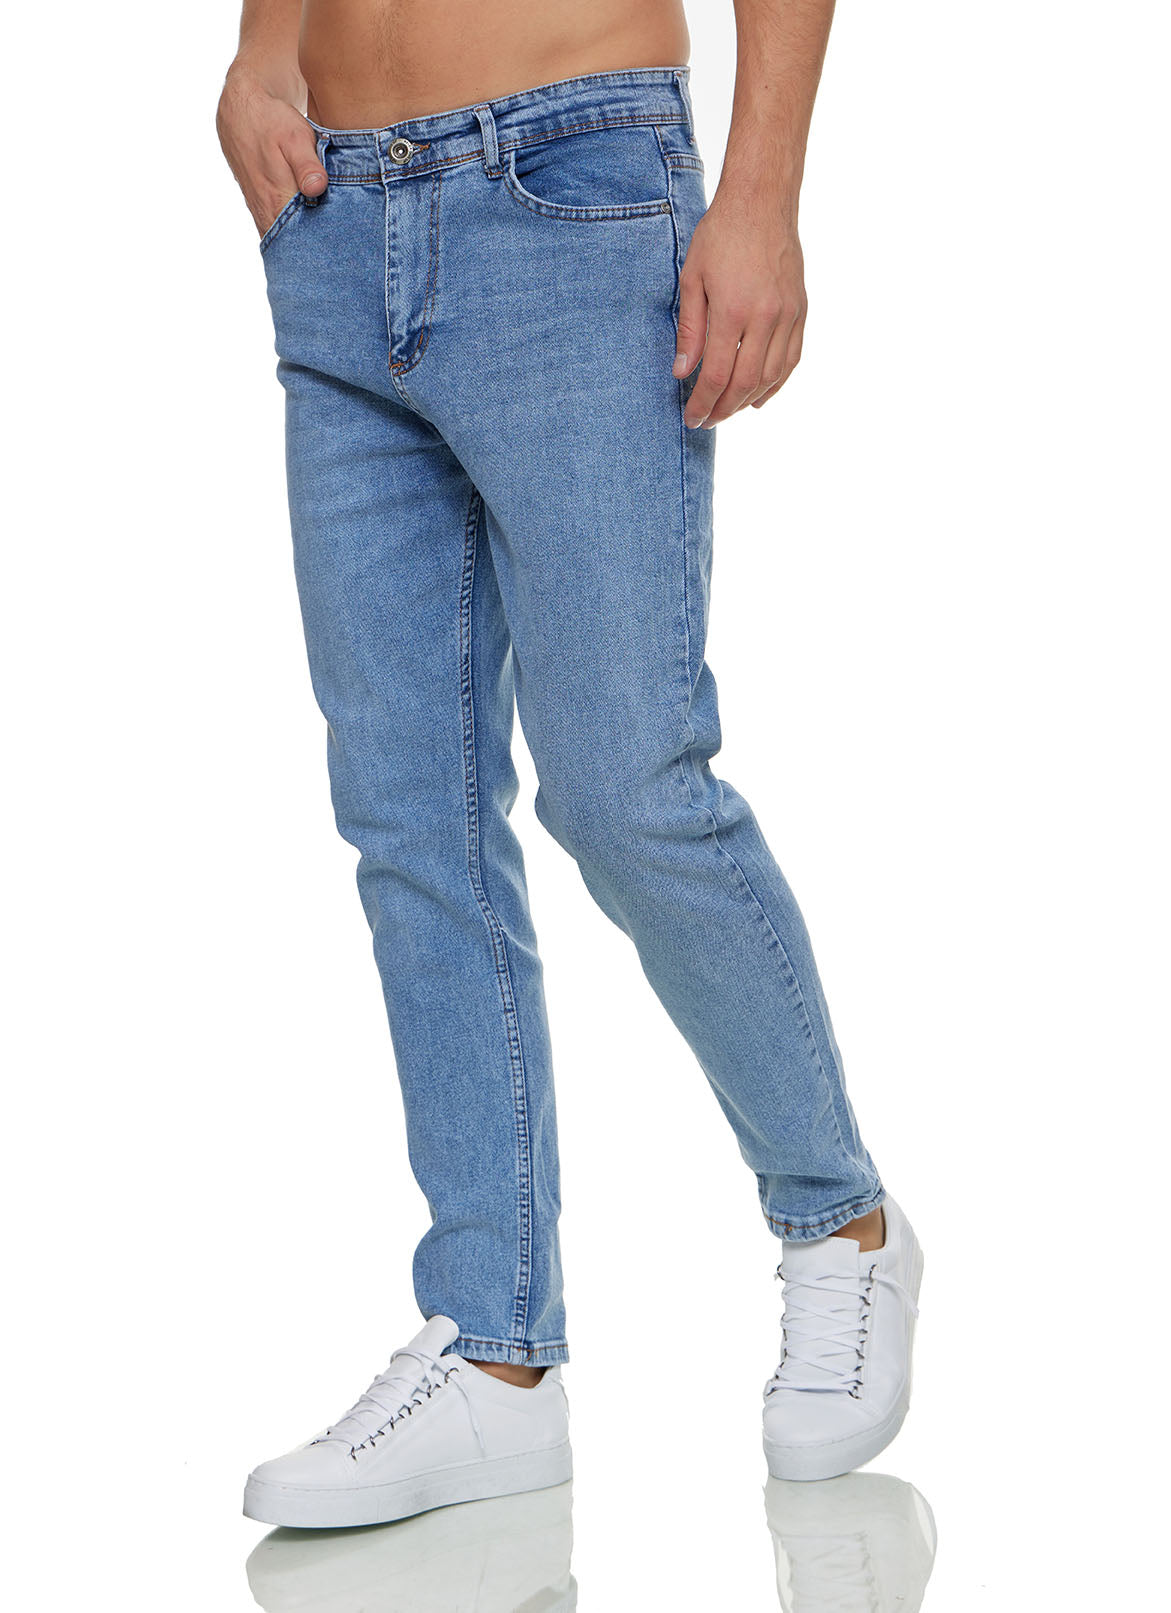 Light Blue Jeans in Kenya for sale ▷ Prices on Jiji.co.ke